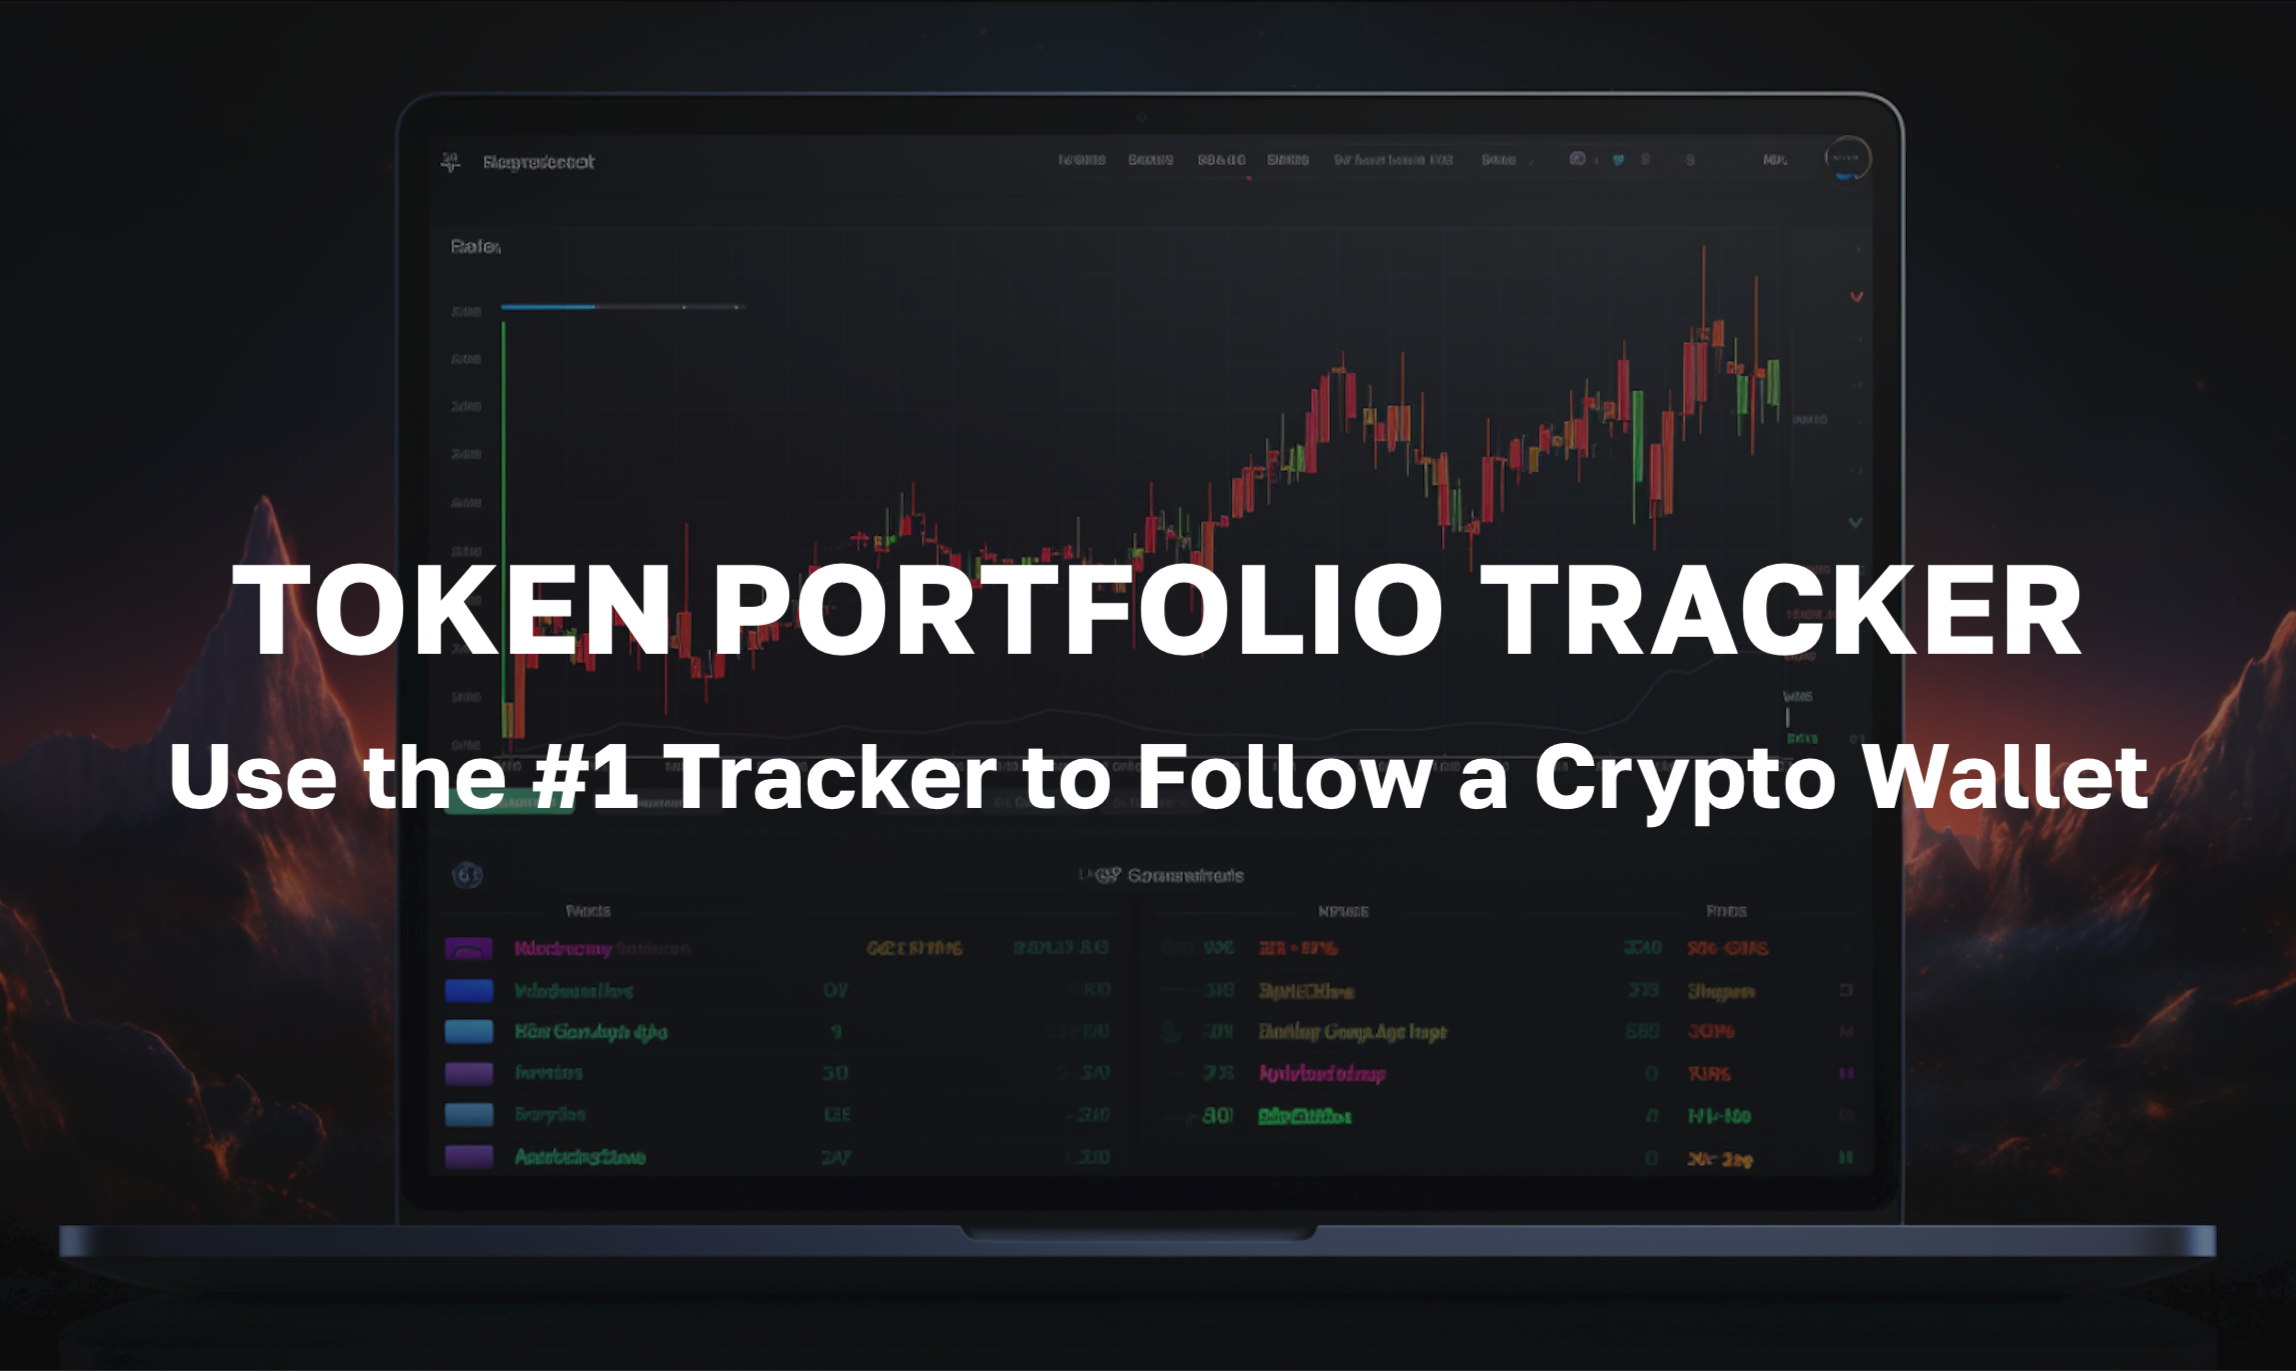 Follow a Crypto Wallet Using the #1 Token Portfolio Tracker